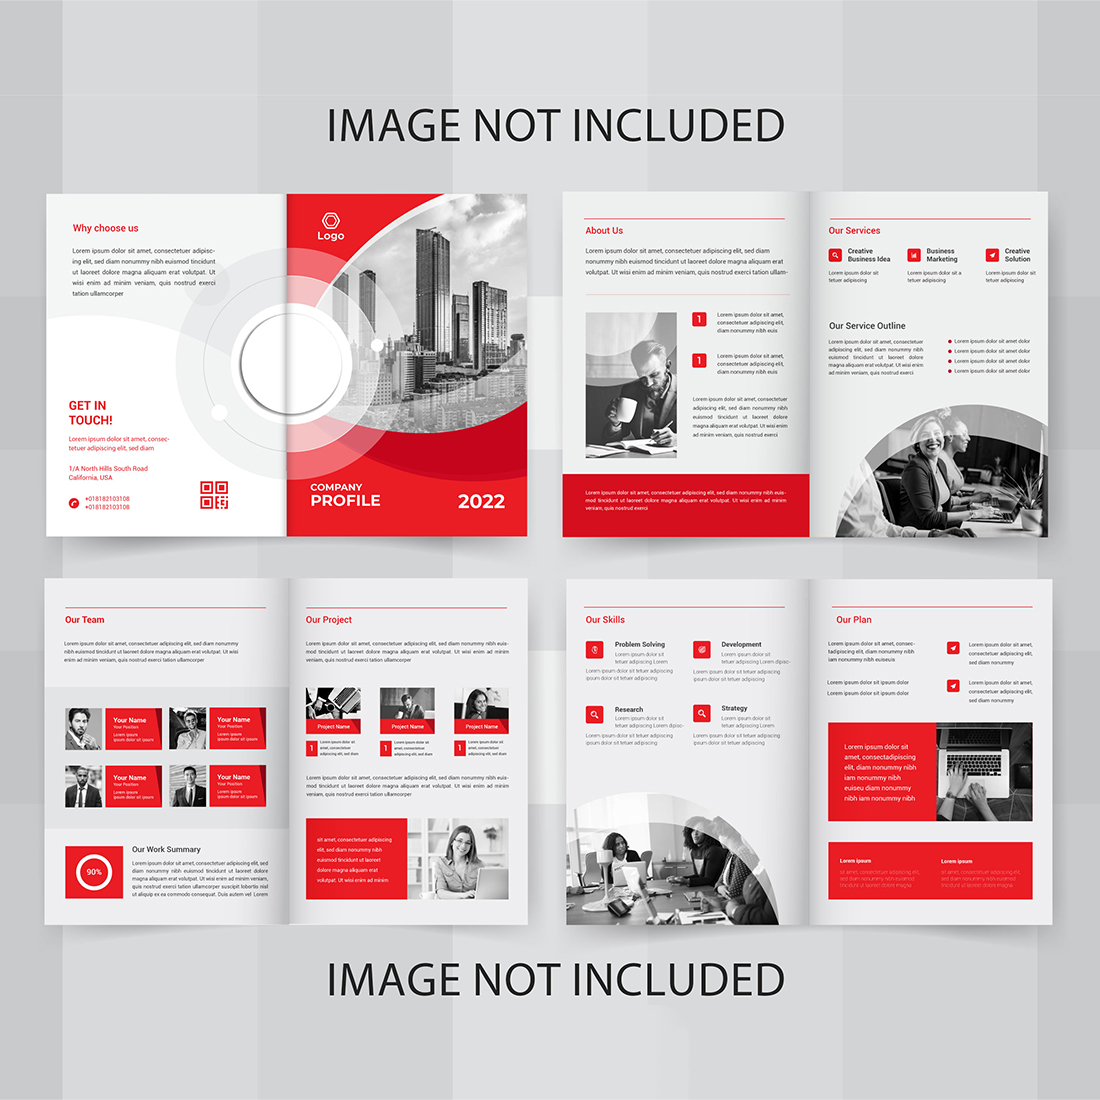 Vector Creative Company Profile Template Design cover image.